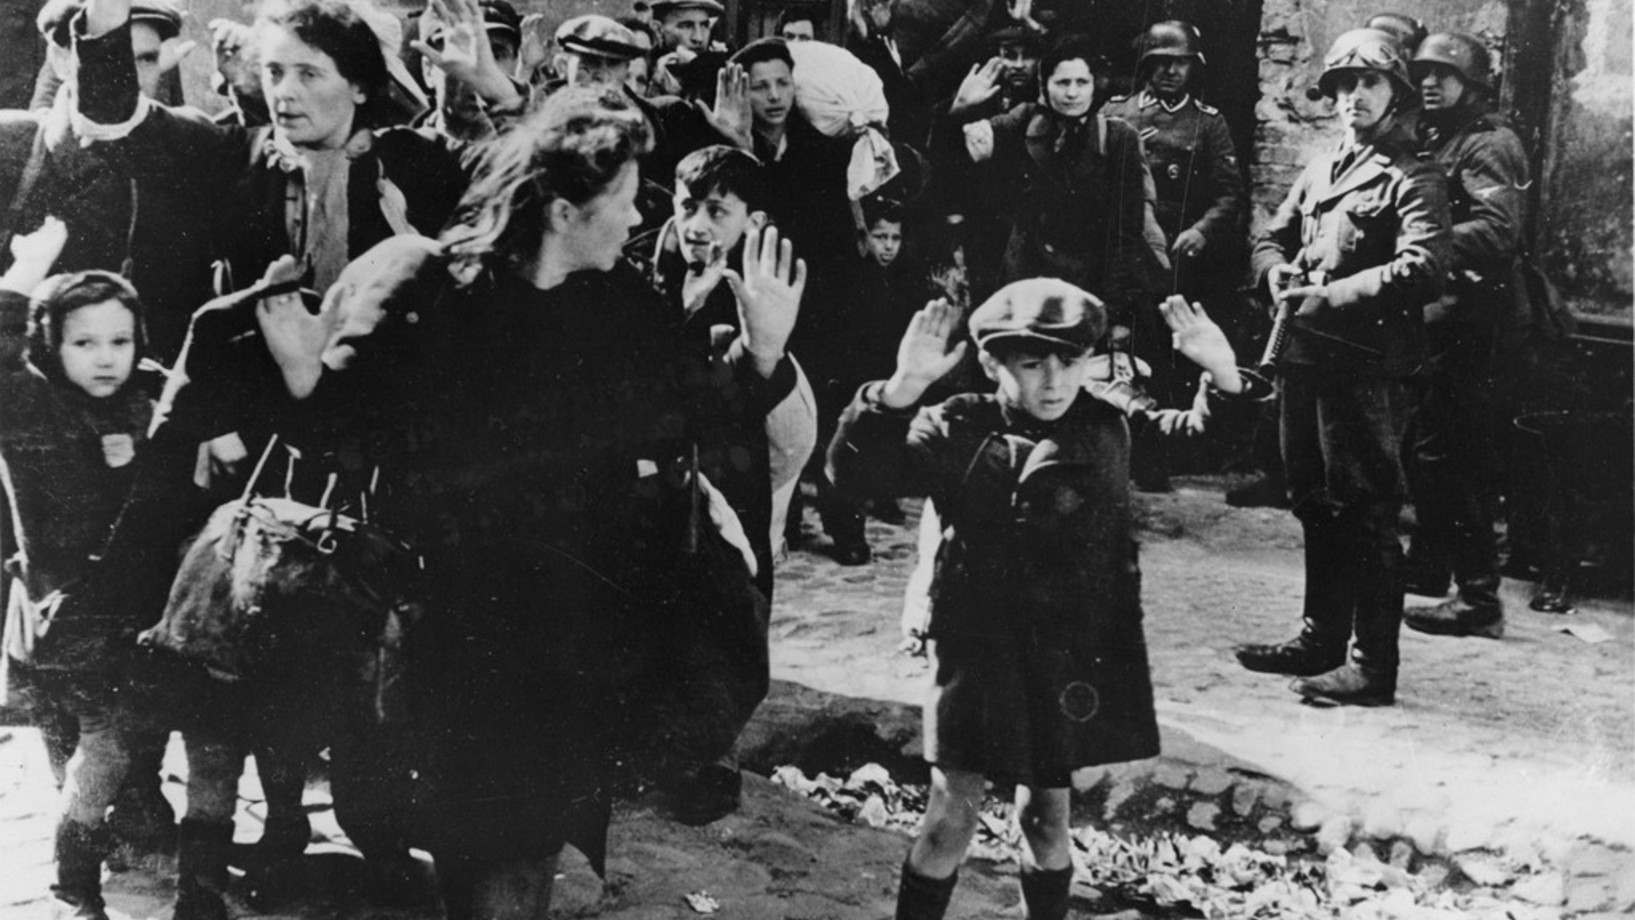 Am 19. April 1943 begann der Aufstand im Ghetto in Warschau. Zuvor war die SS mit zwei Bataillonen eingerückt, um das Ghetto zu liquidieren. Die Juden setzten sich mit heimlich angeschafften Waffen zur Wehr - zunächst mit Erfolg. Das Foto, das am 19. April aufgenommen wurde, legte der Kommandant des SS-Einsatzes, Brigadeführer Jürgen Stroop, dem Bericht an seine Vorgesetzten bei. Das Bild wurde 1945 beim Nürnberger Kriegsverbrecherprozess als Beweismittel verwendet. (Bild: Aus dem Archiv der Foto-Agentur K…